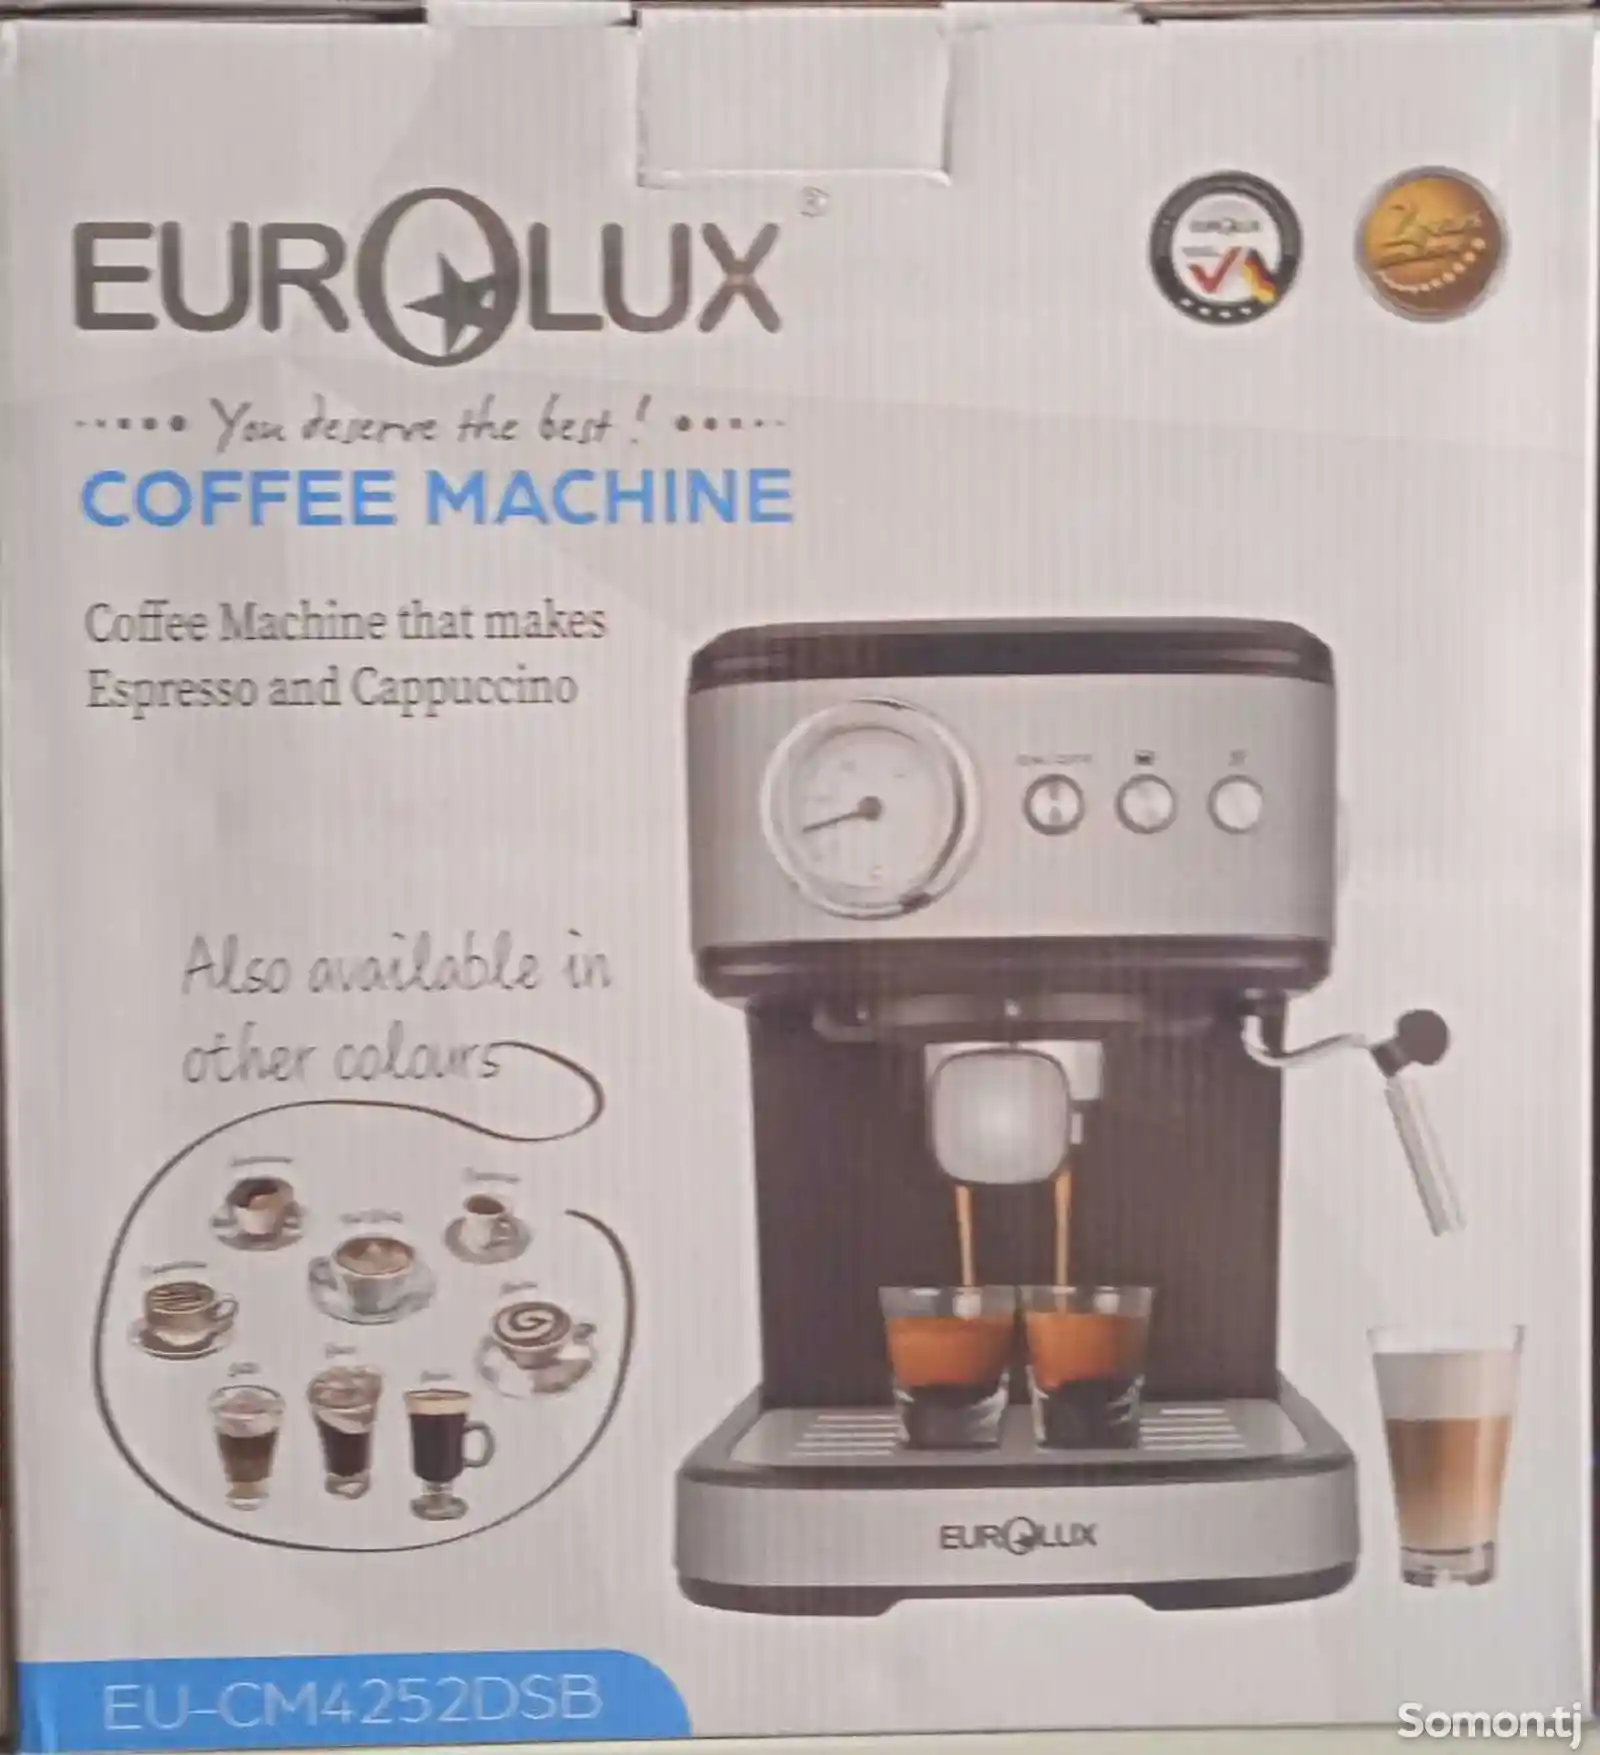 Кофеварка Eurolux EU-CM4252-2